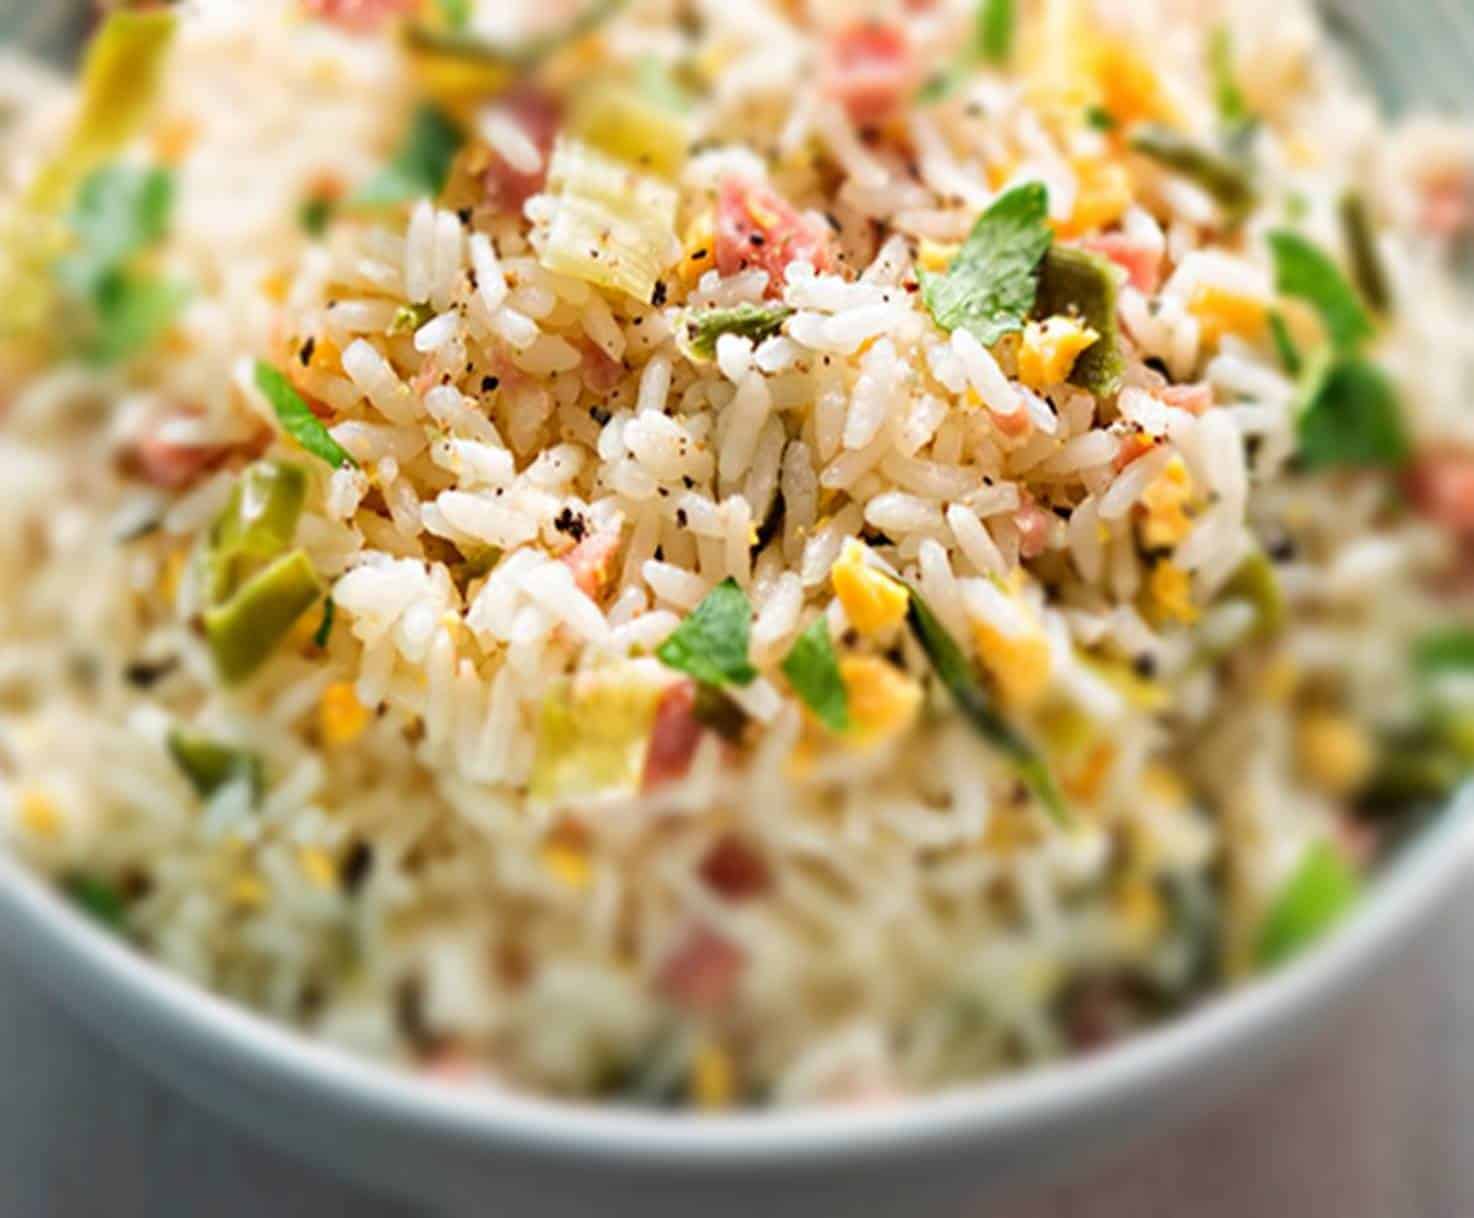 Medida certa de arroz pode lhe ajudar a emagrecer